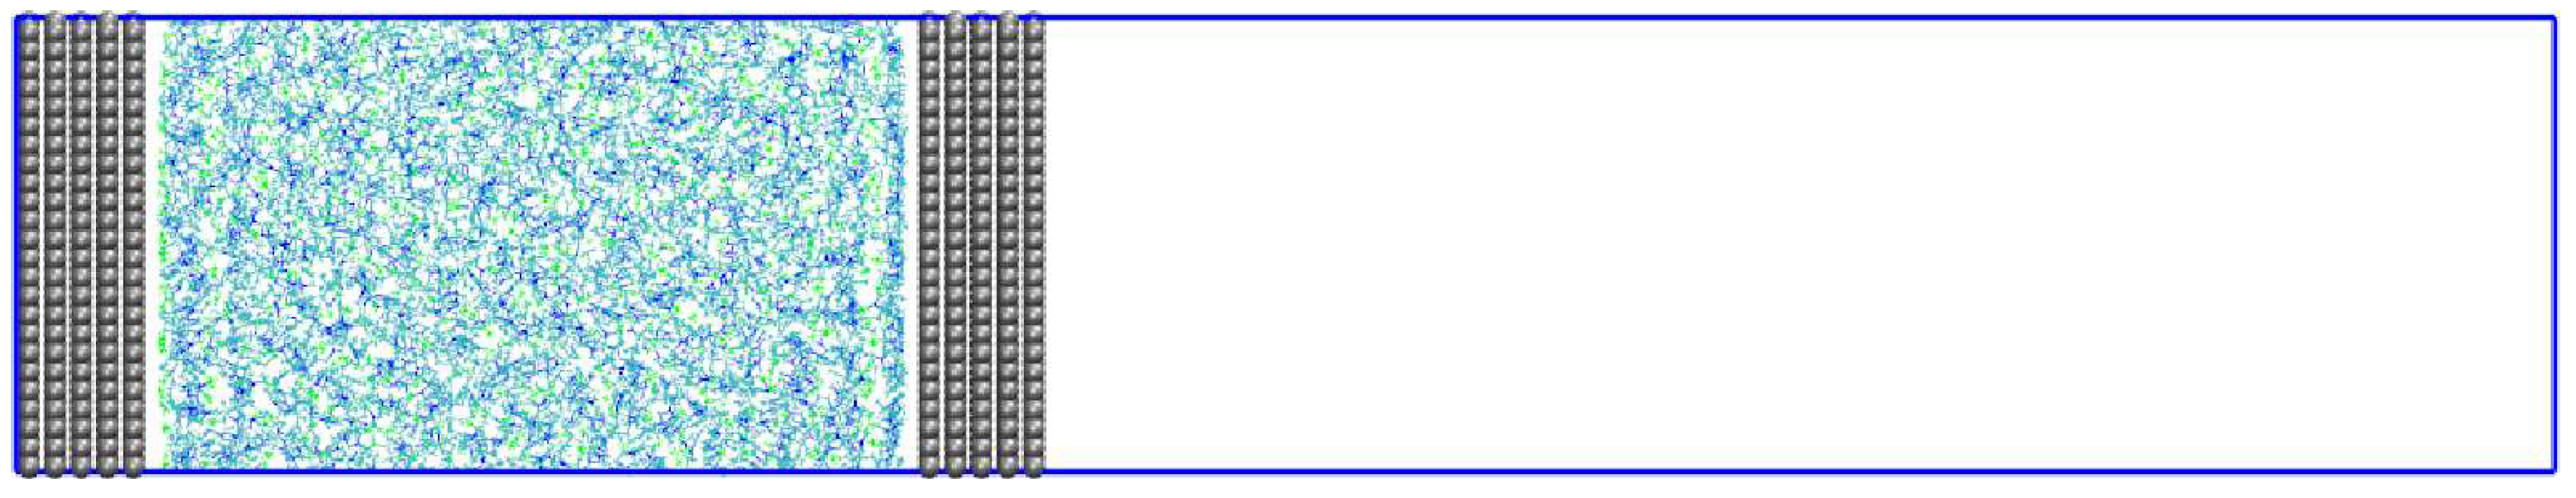 图1: BMI BF4板块结构的模拟盒子在zx平面的快照. 模拟盒子以蓝色长方形表示, 电极(石墨烯)为灰色, 阴阳离子为VMD标准颜色